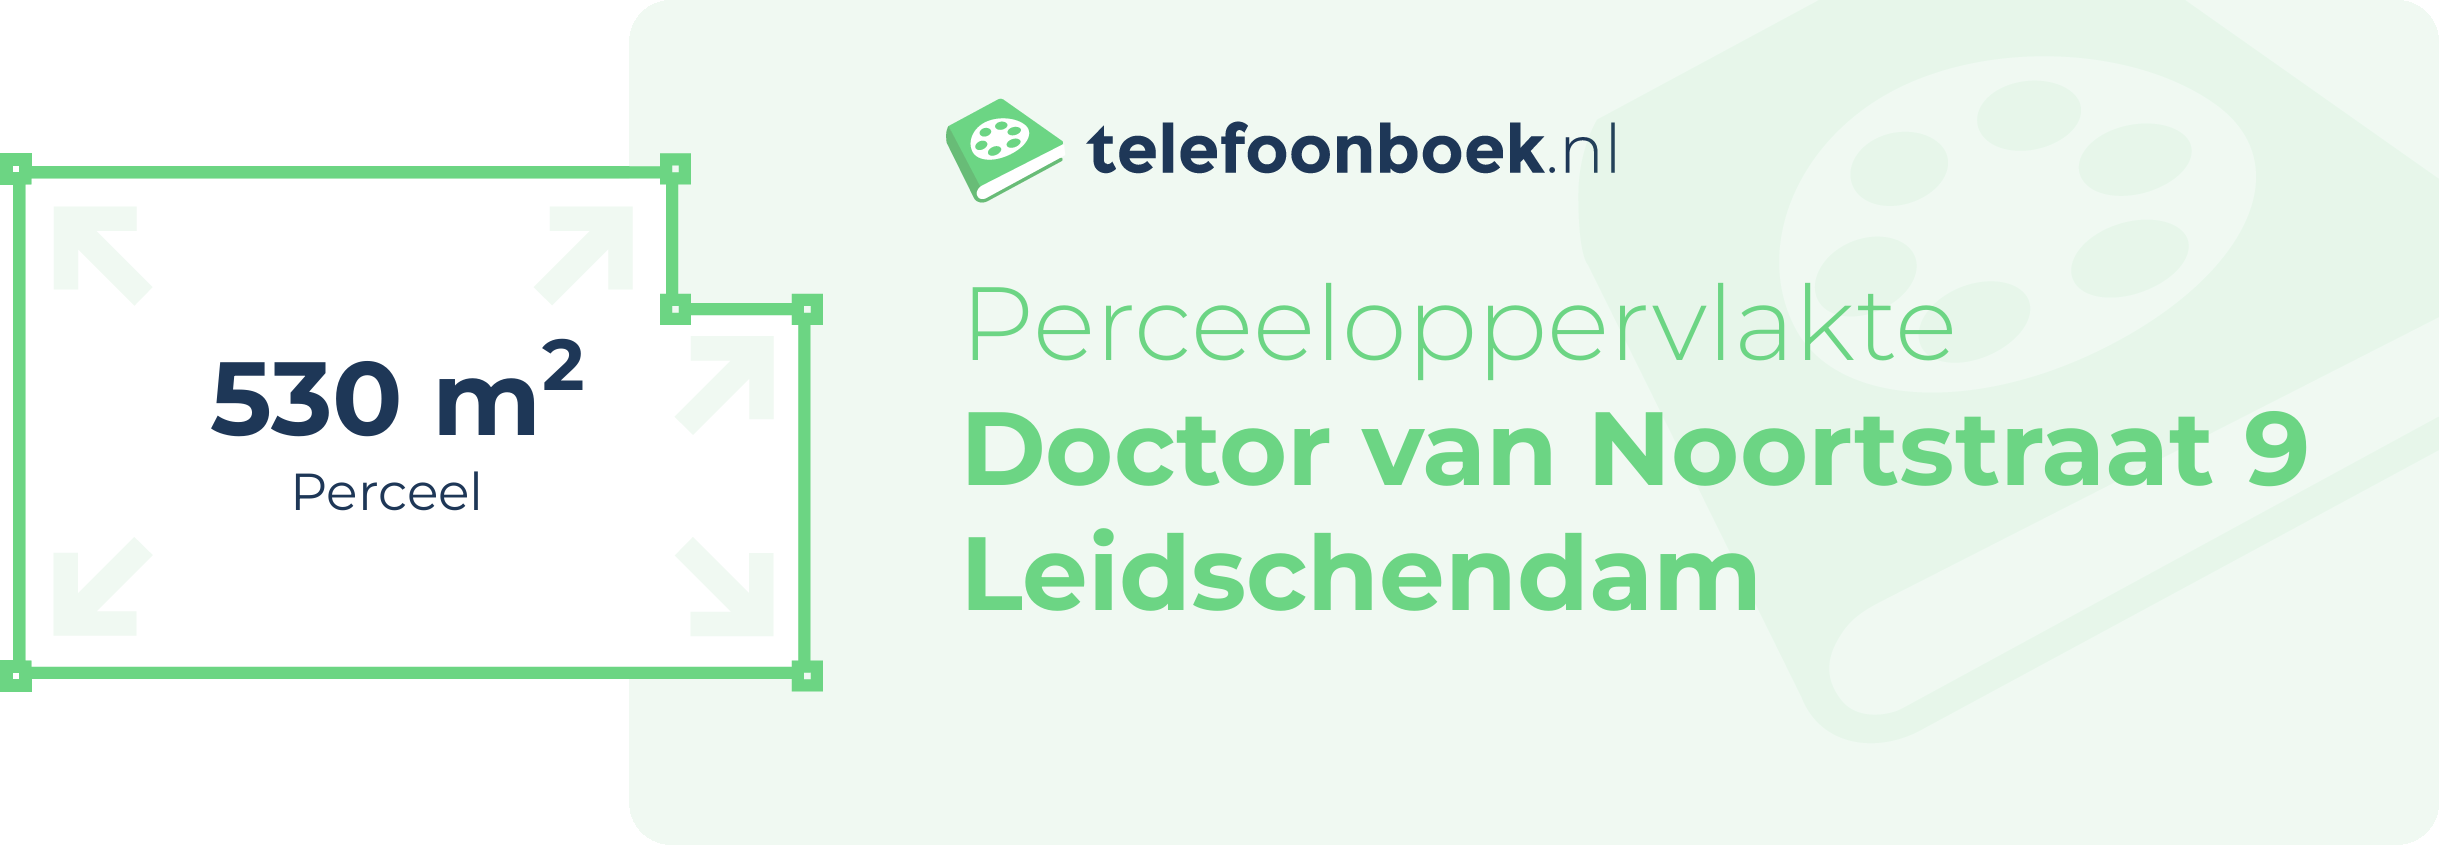 Perceeloppervlakte Doctor Van Noortstraat 9 Leidschendam